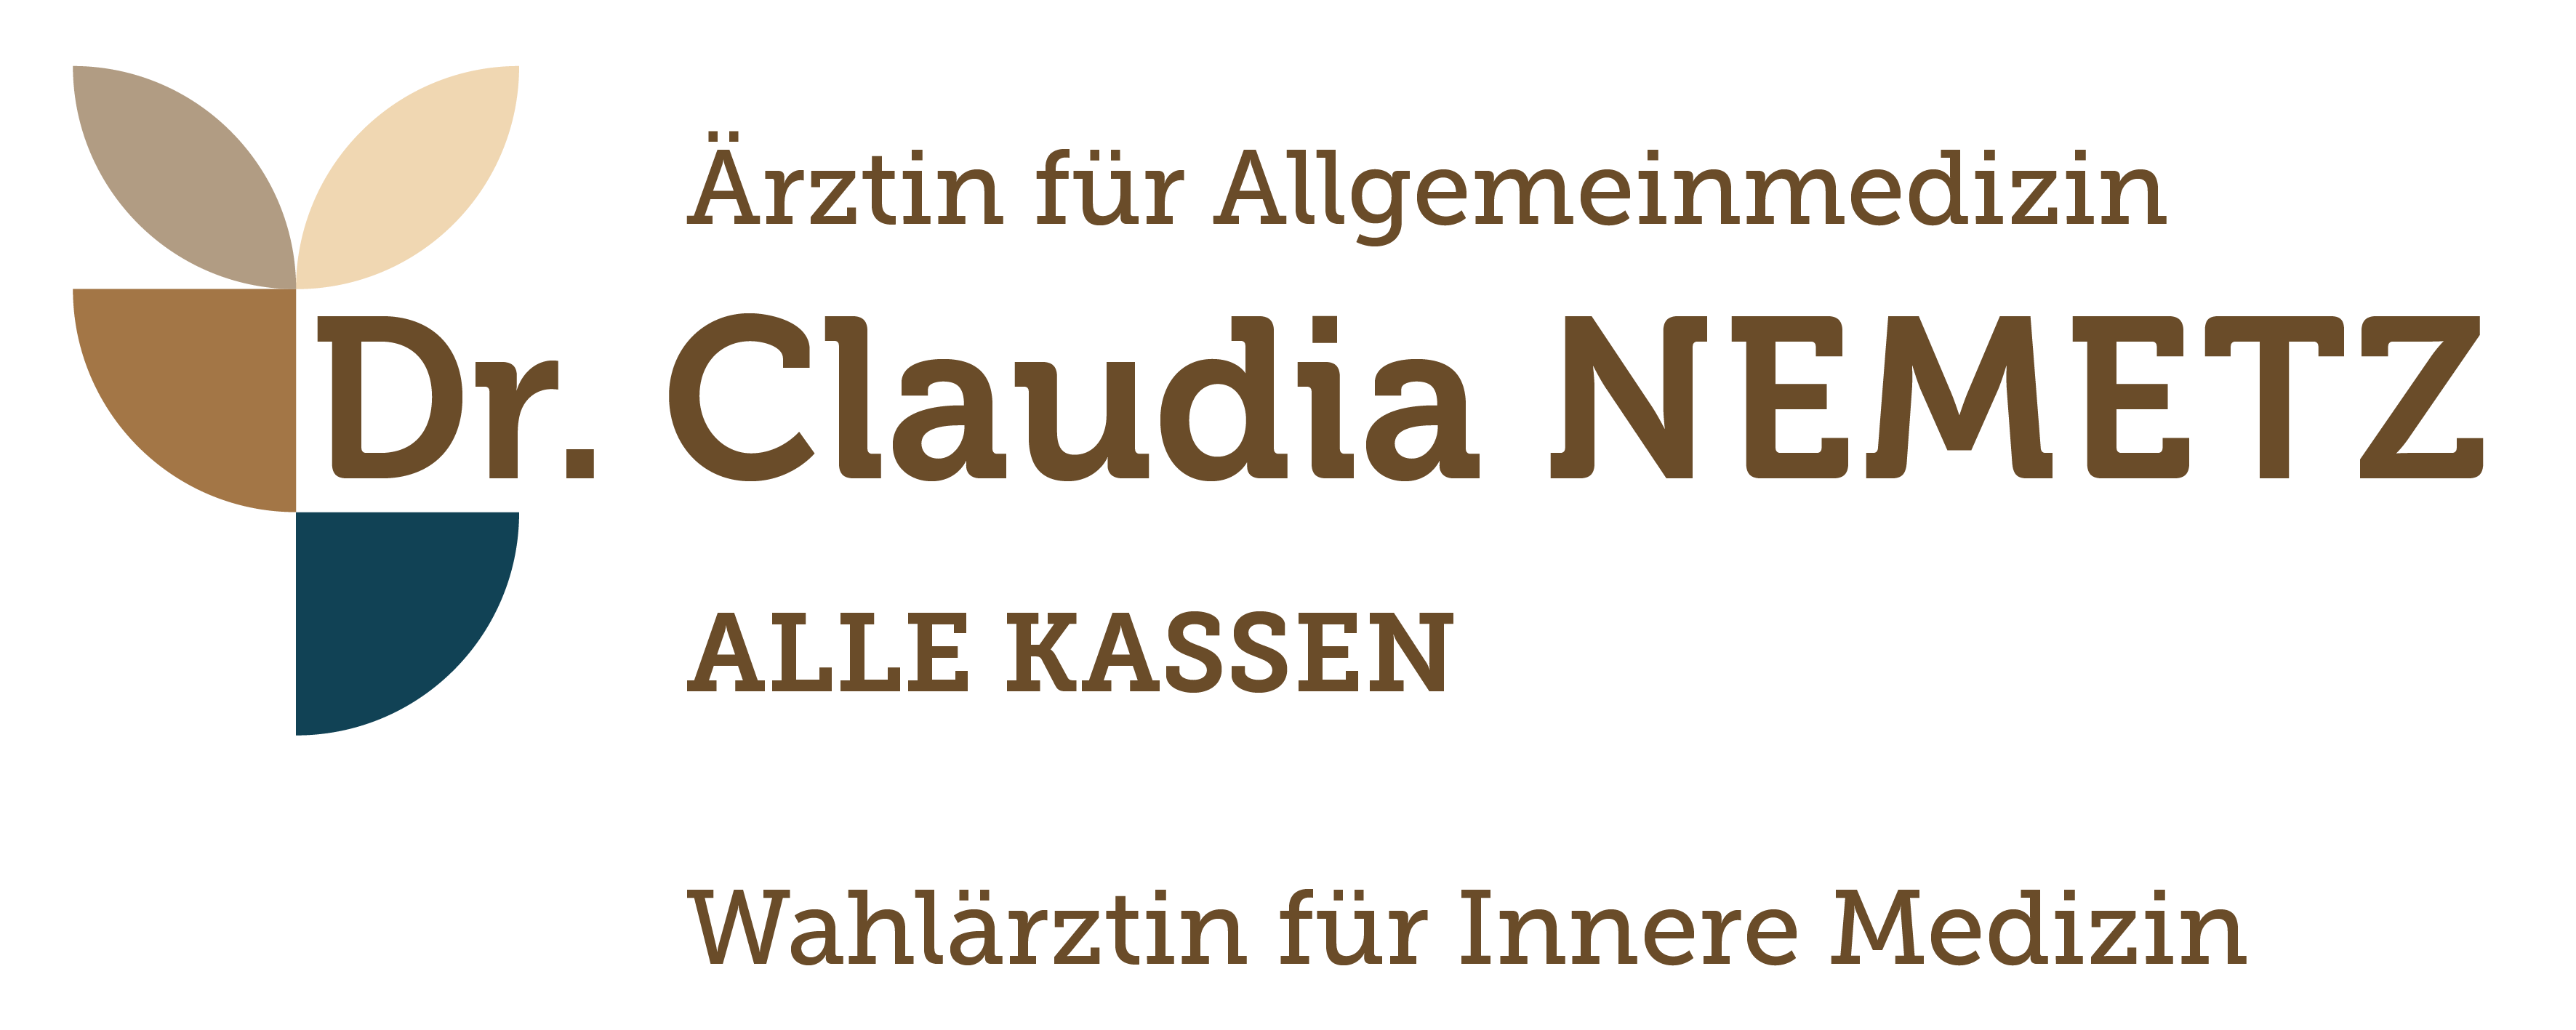 Dr. Claudia Nemetz